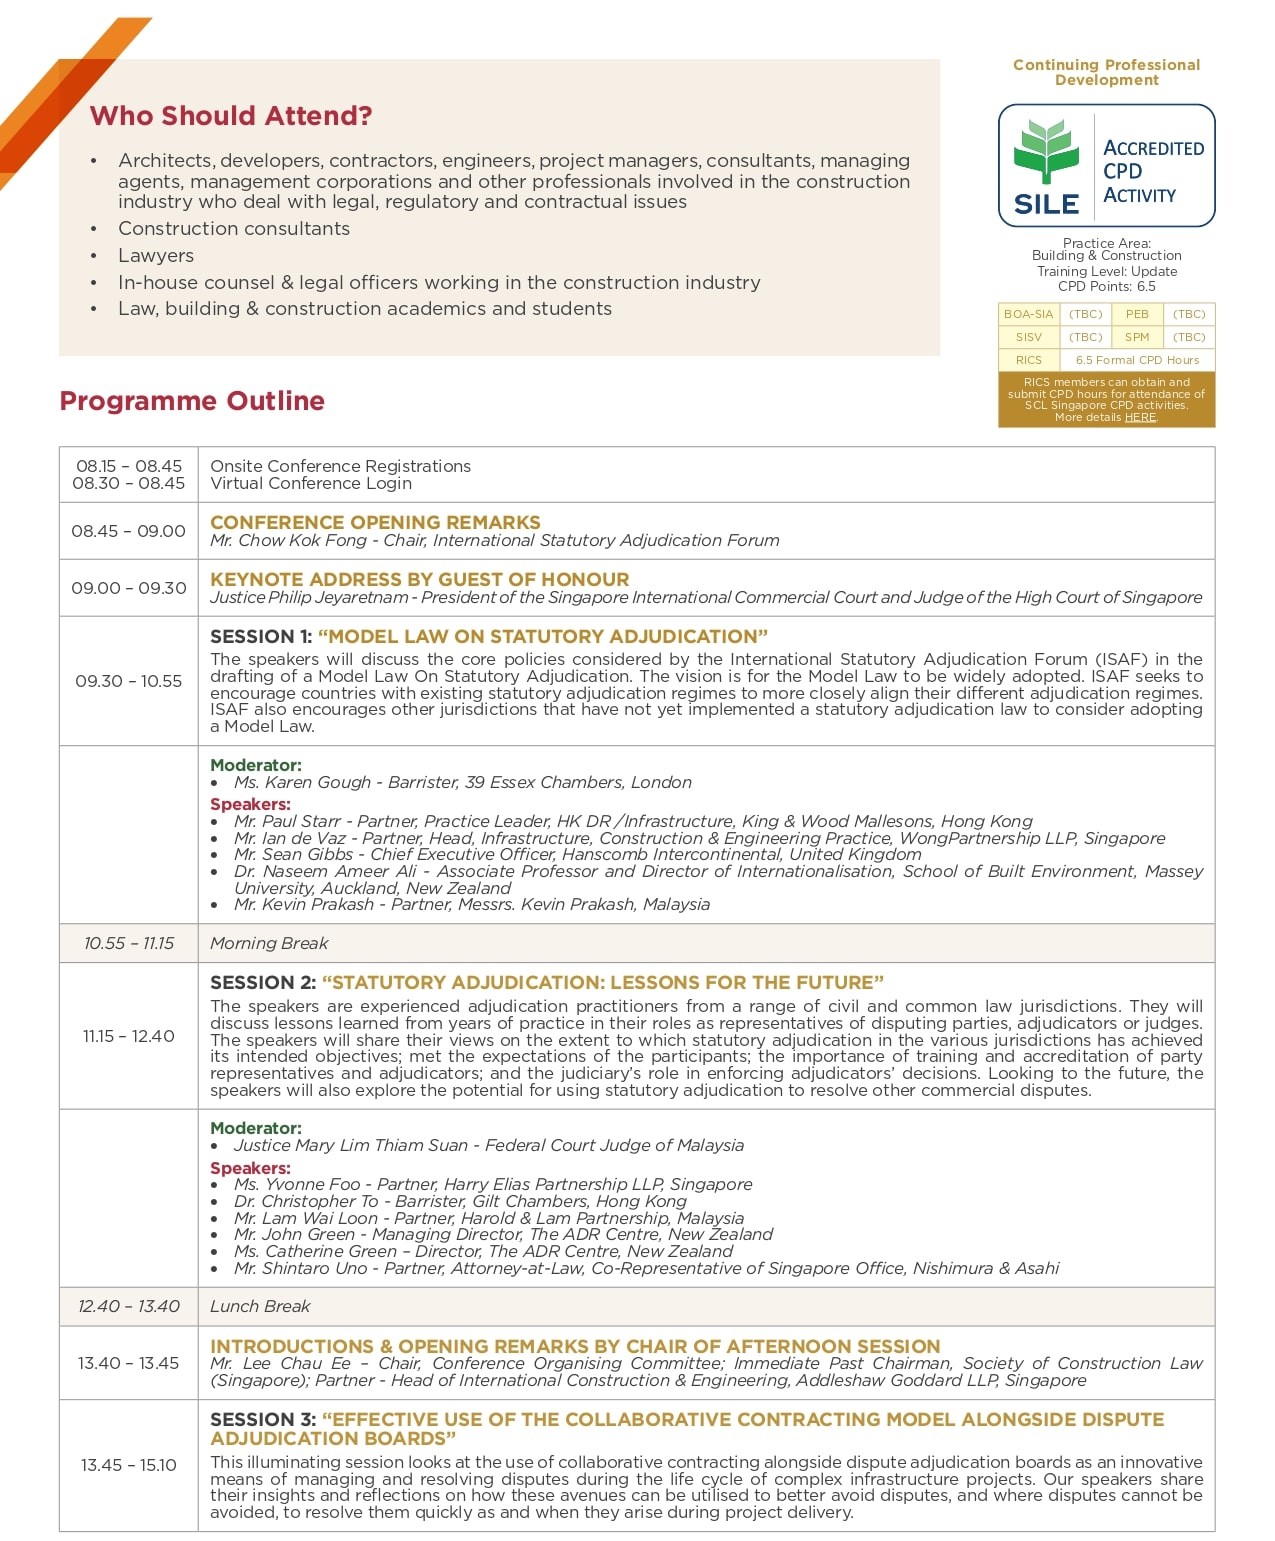 SCLS - ISAF Conference 2023: Programme Outline